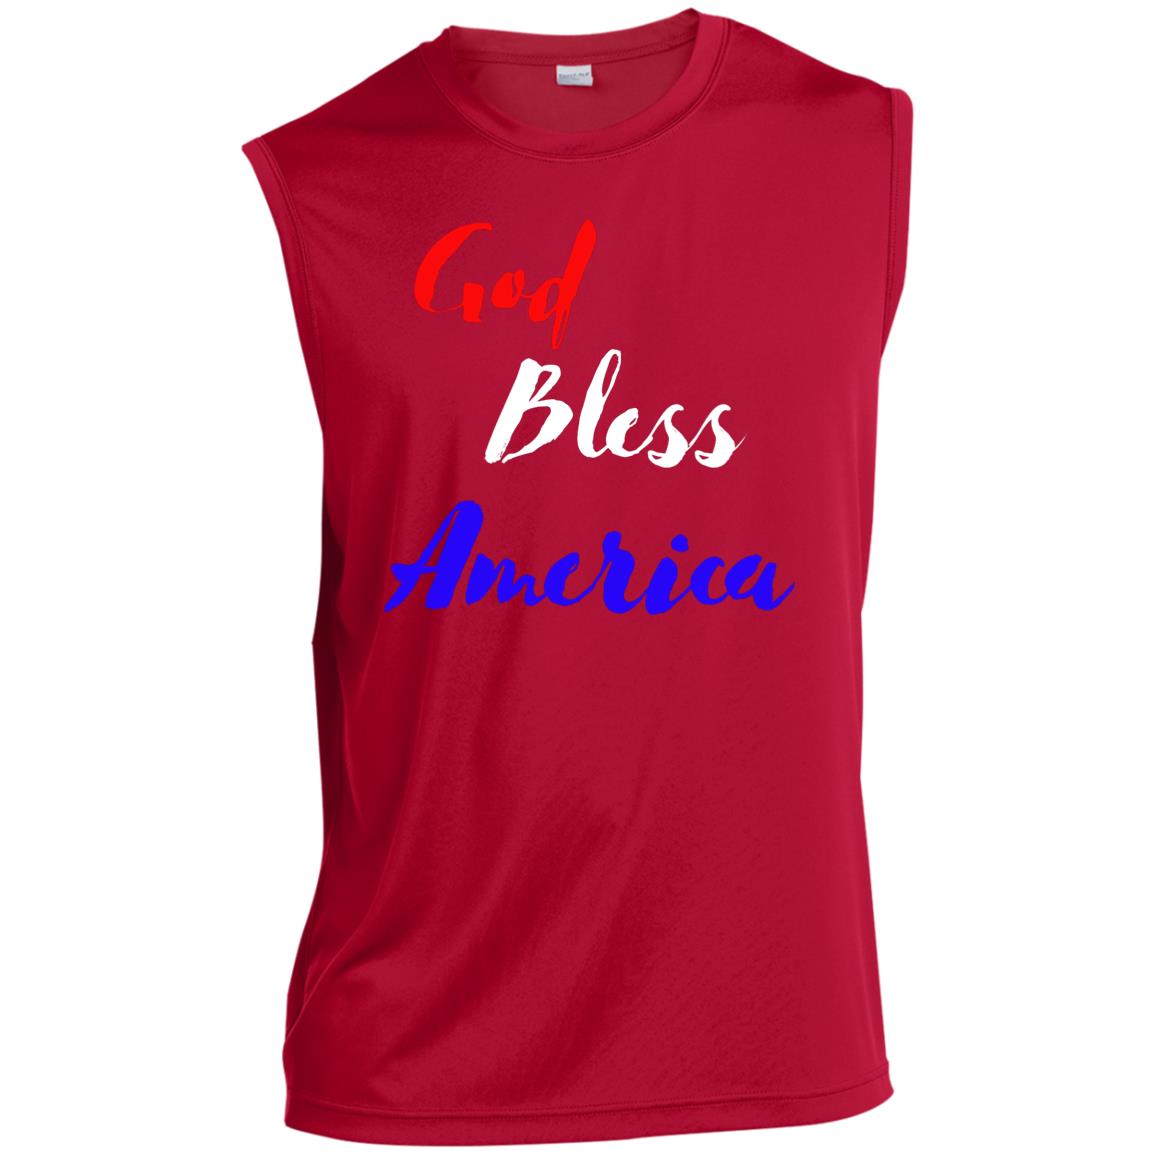 God bless America red white blue ST352 Men’s Sleeveless Performance Tee